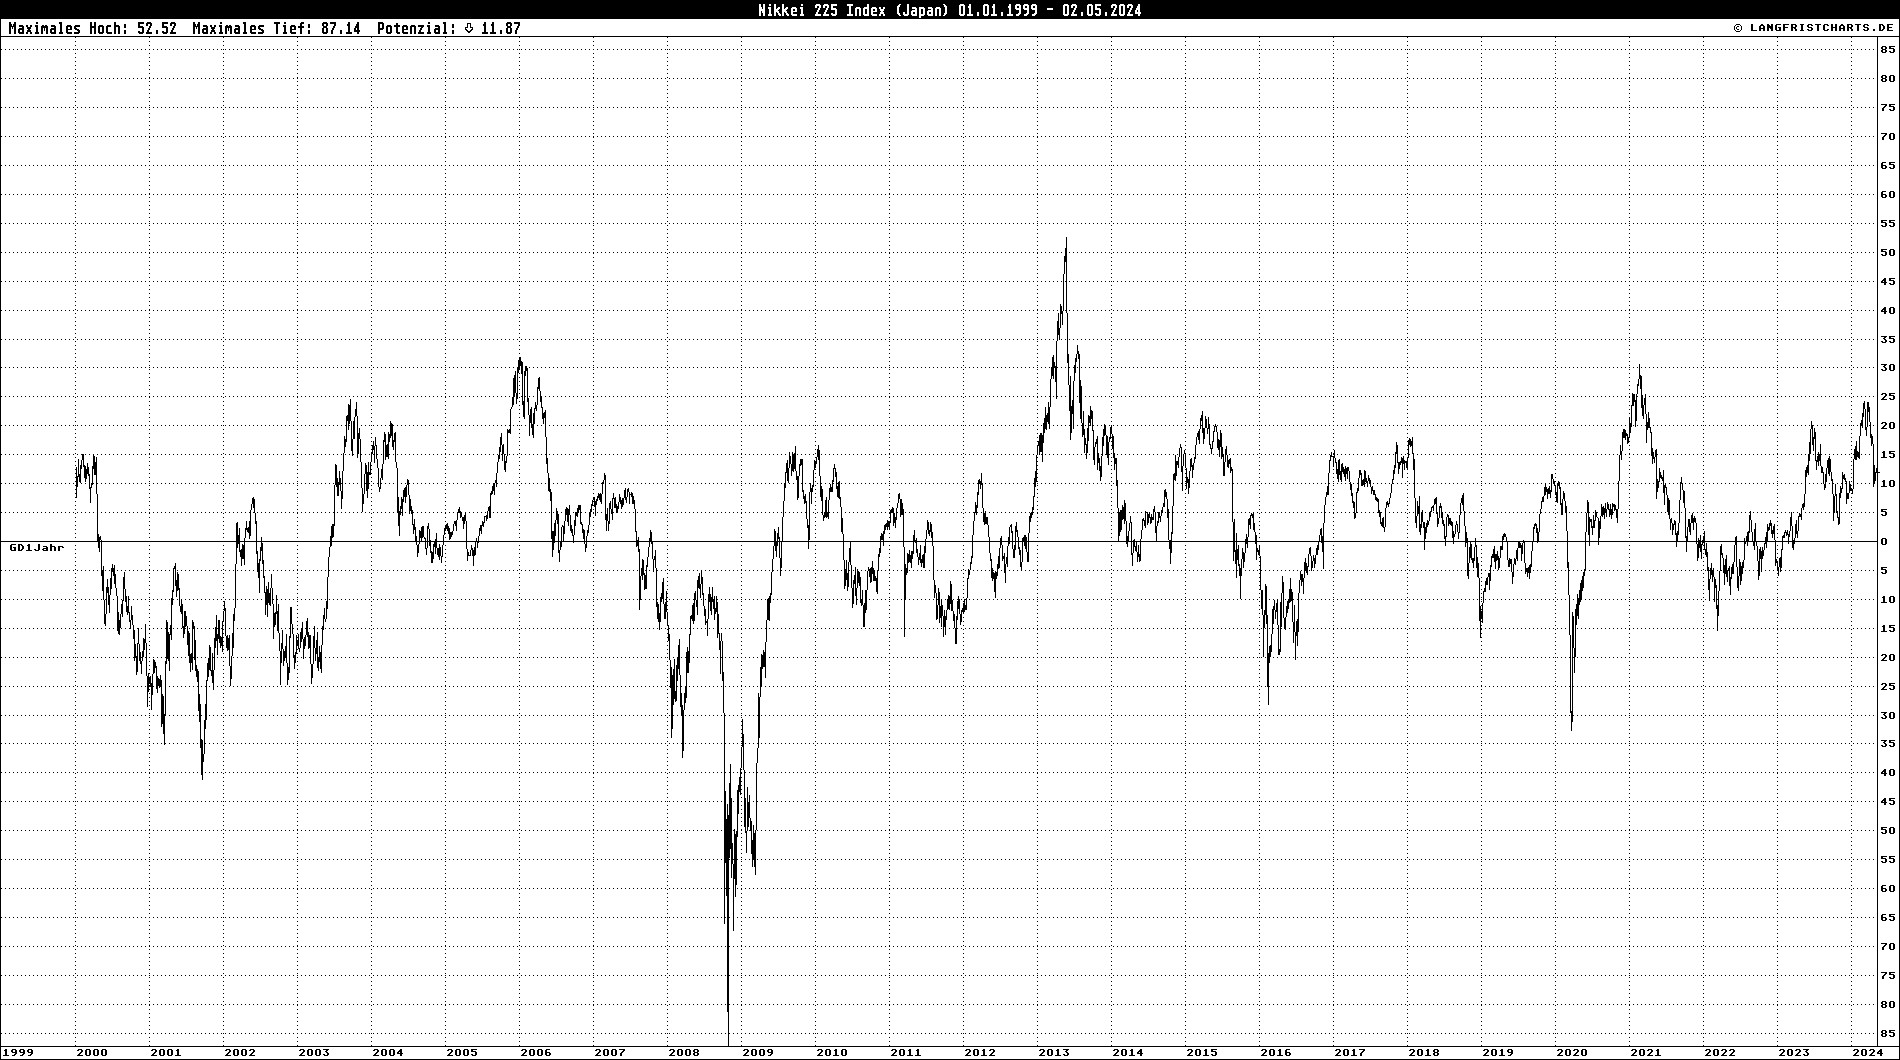 GD-Abweichungschart: Nikkei 225 Index